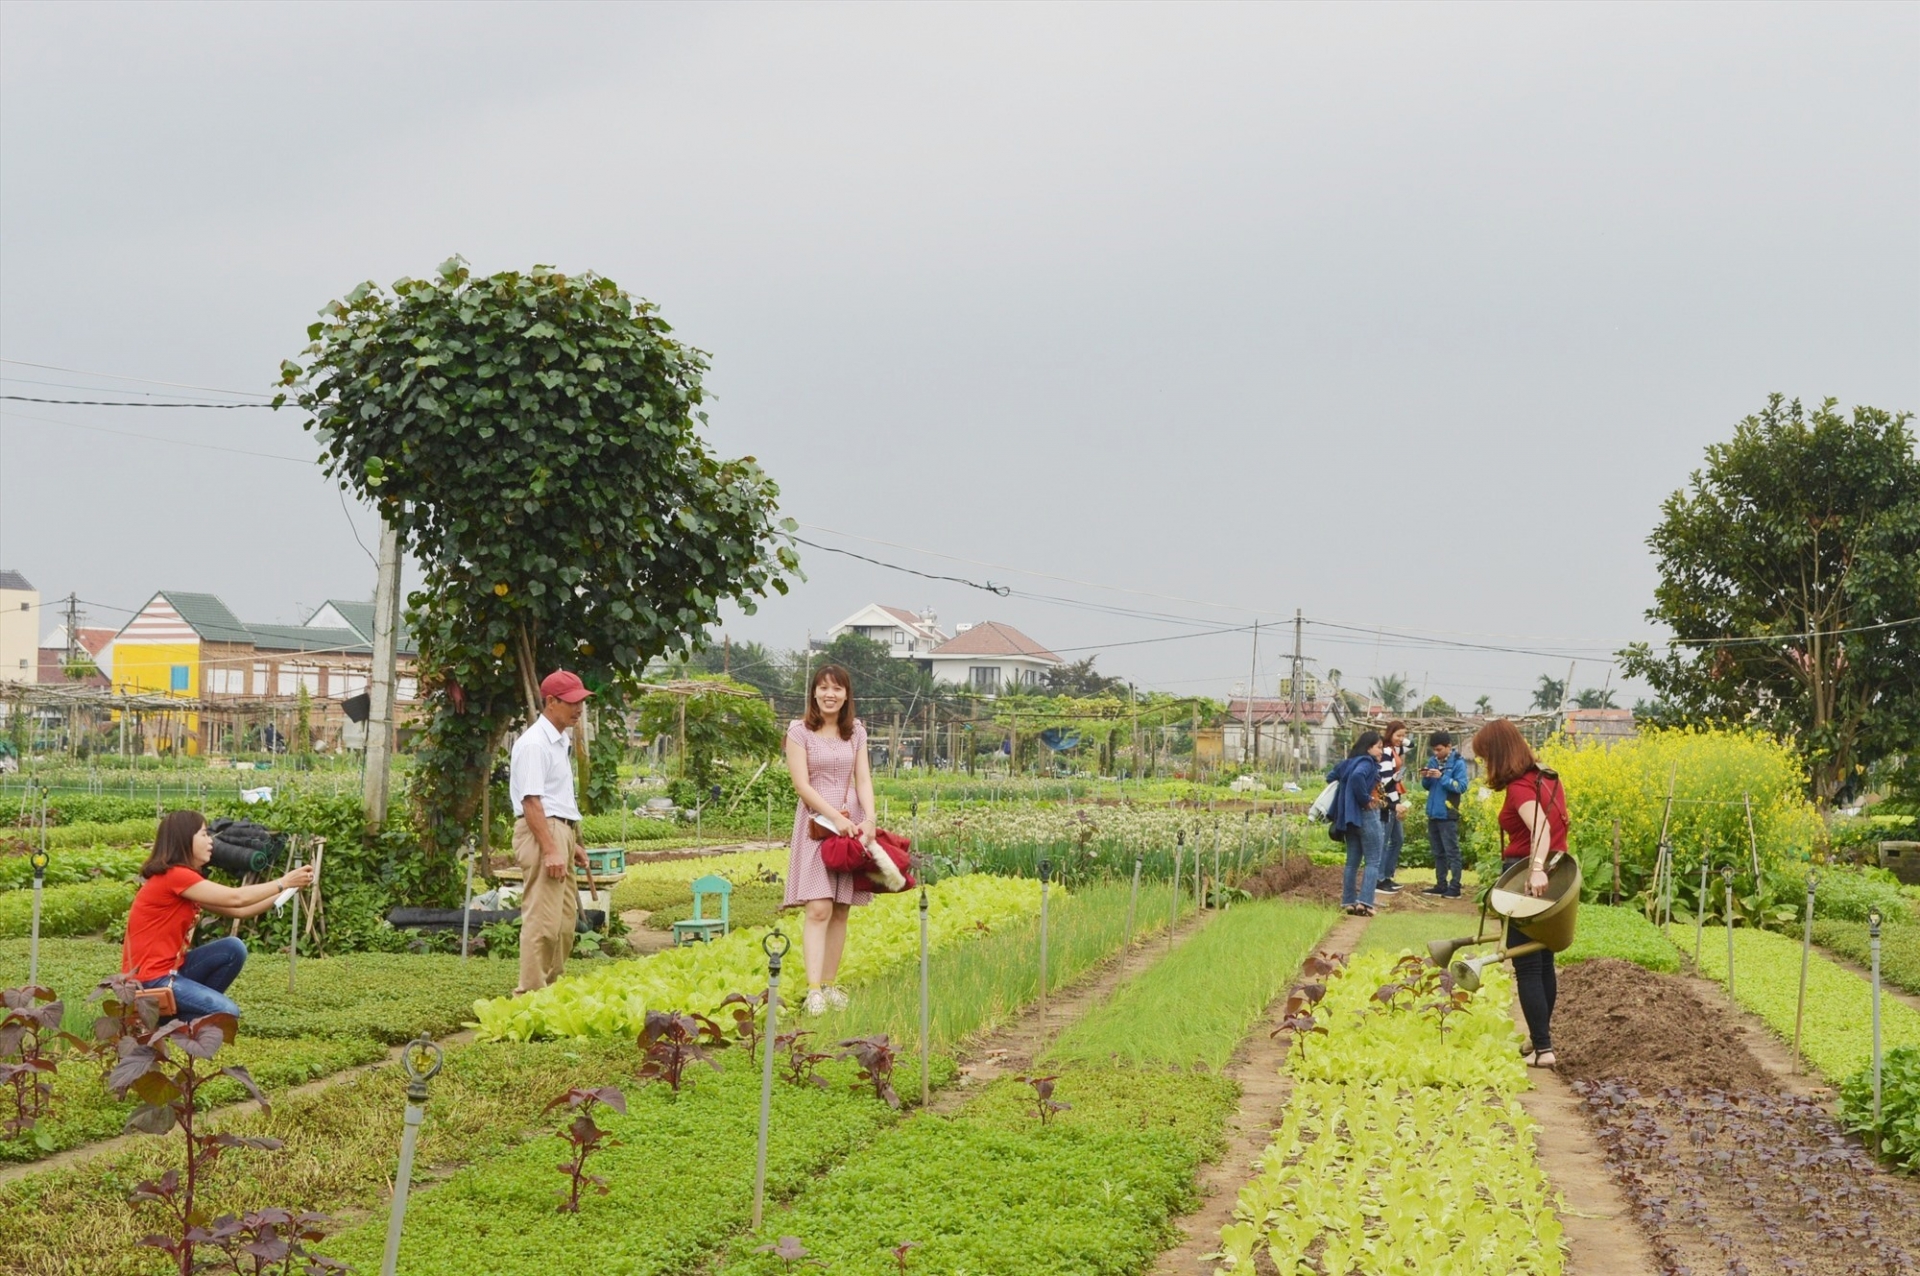 会安茶桂蔬菜种植业被列入国家级非物质文化遗产名录。